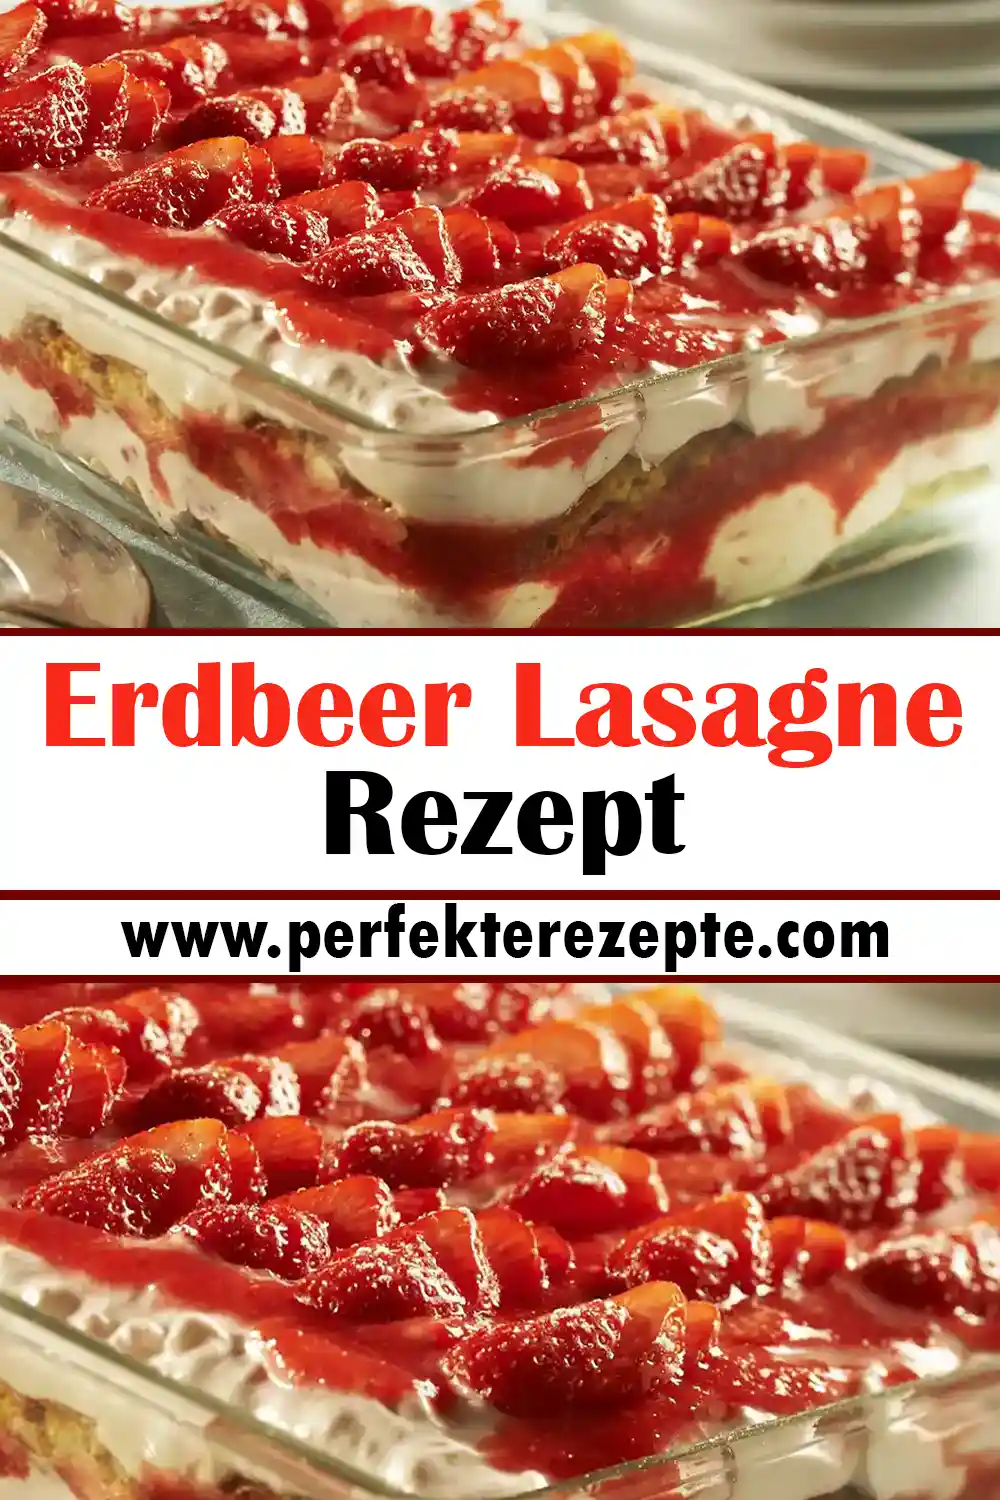 Erdbeer Lasagne Rezept